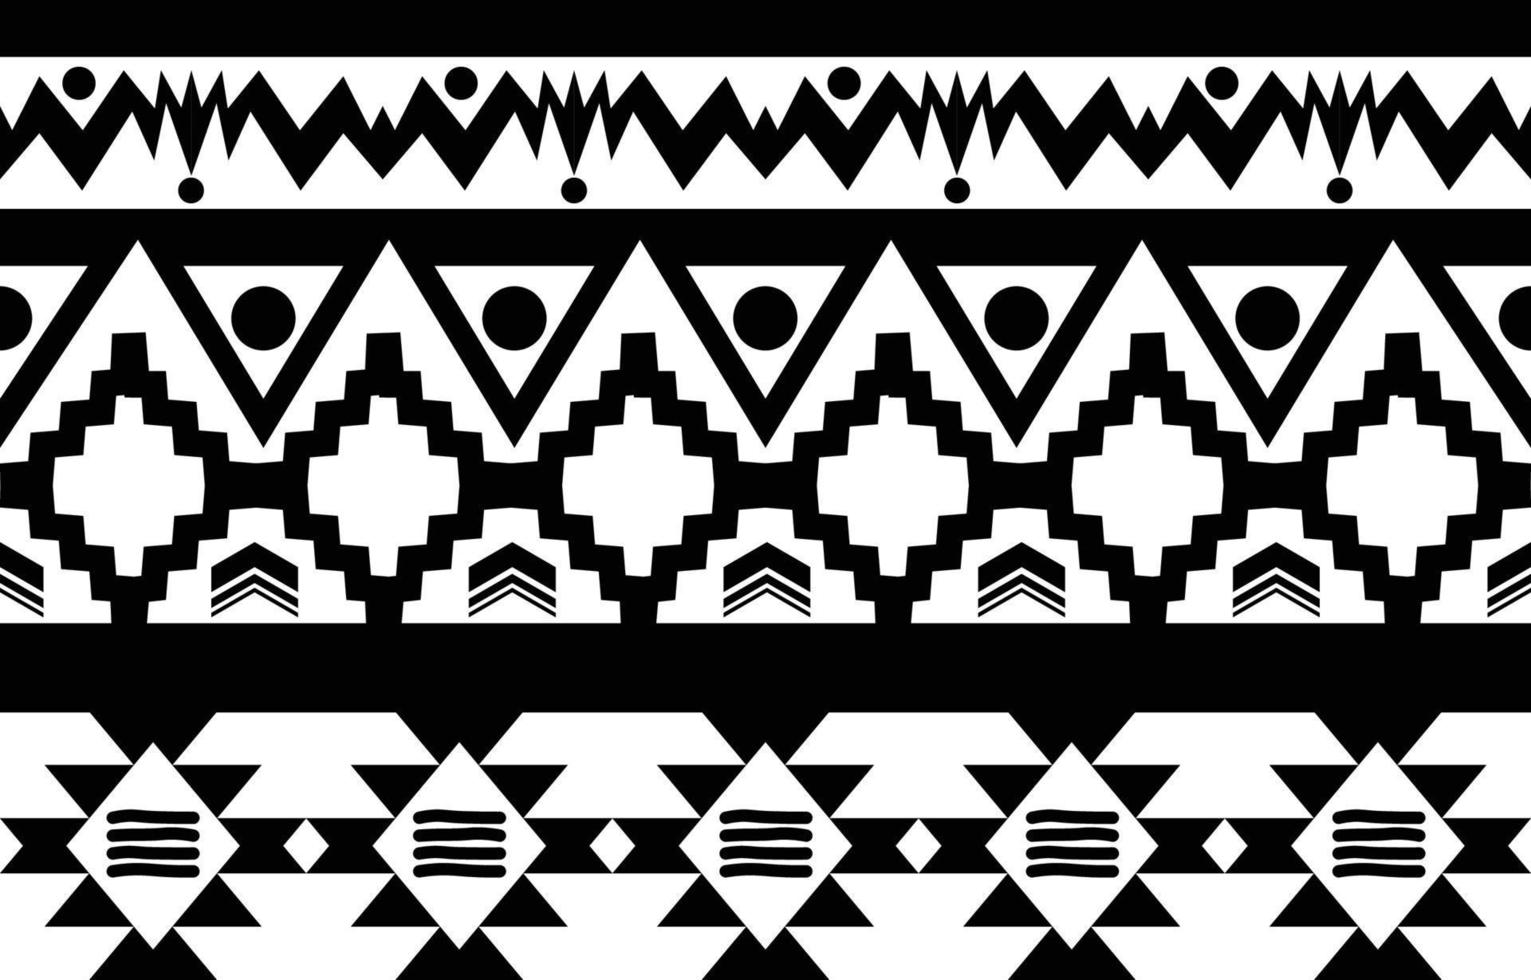 tribal preto e branco abstrato padrão geométrico étnico para ilustração de fundo ou wallpaper.vector para imprimir padrões de tecido, tapetes, camisas, fantasias, turbante, chapéus, cortinas. vetor